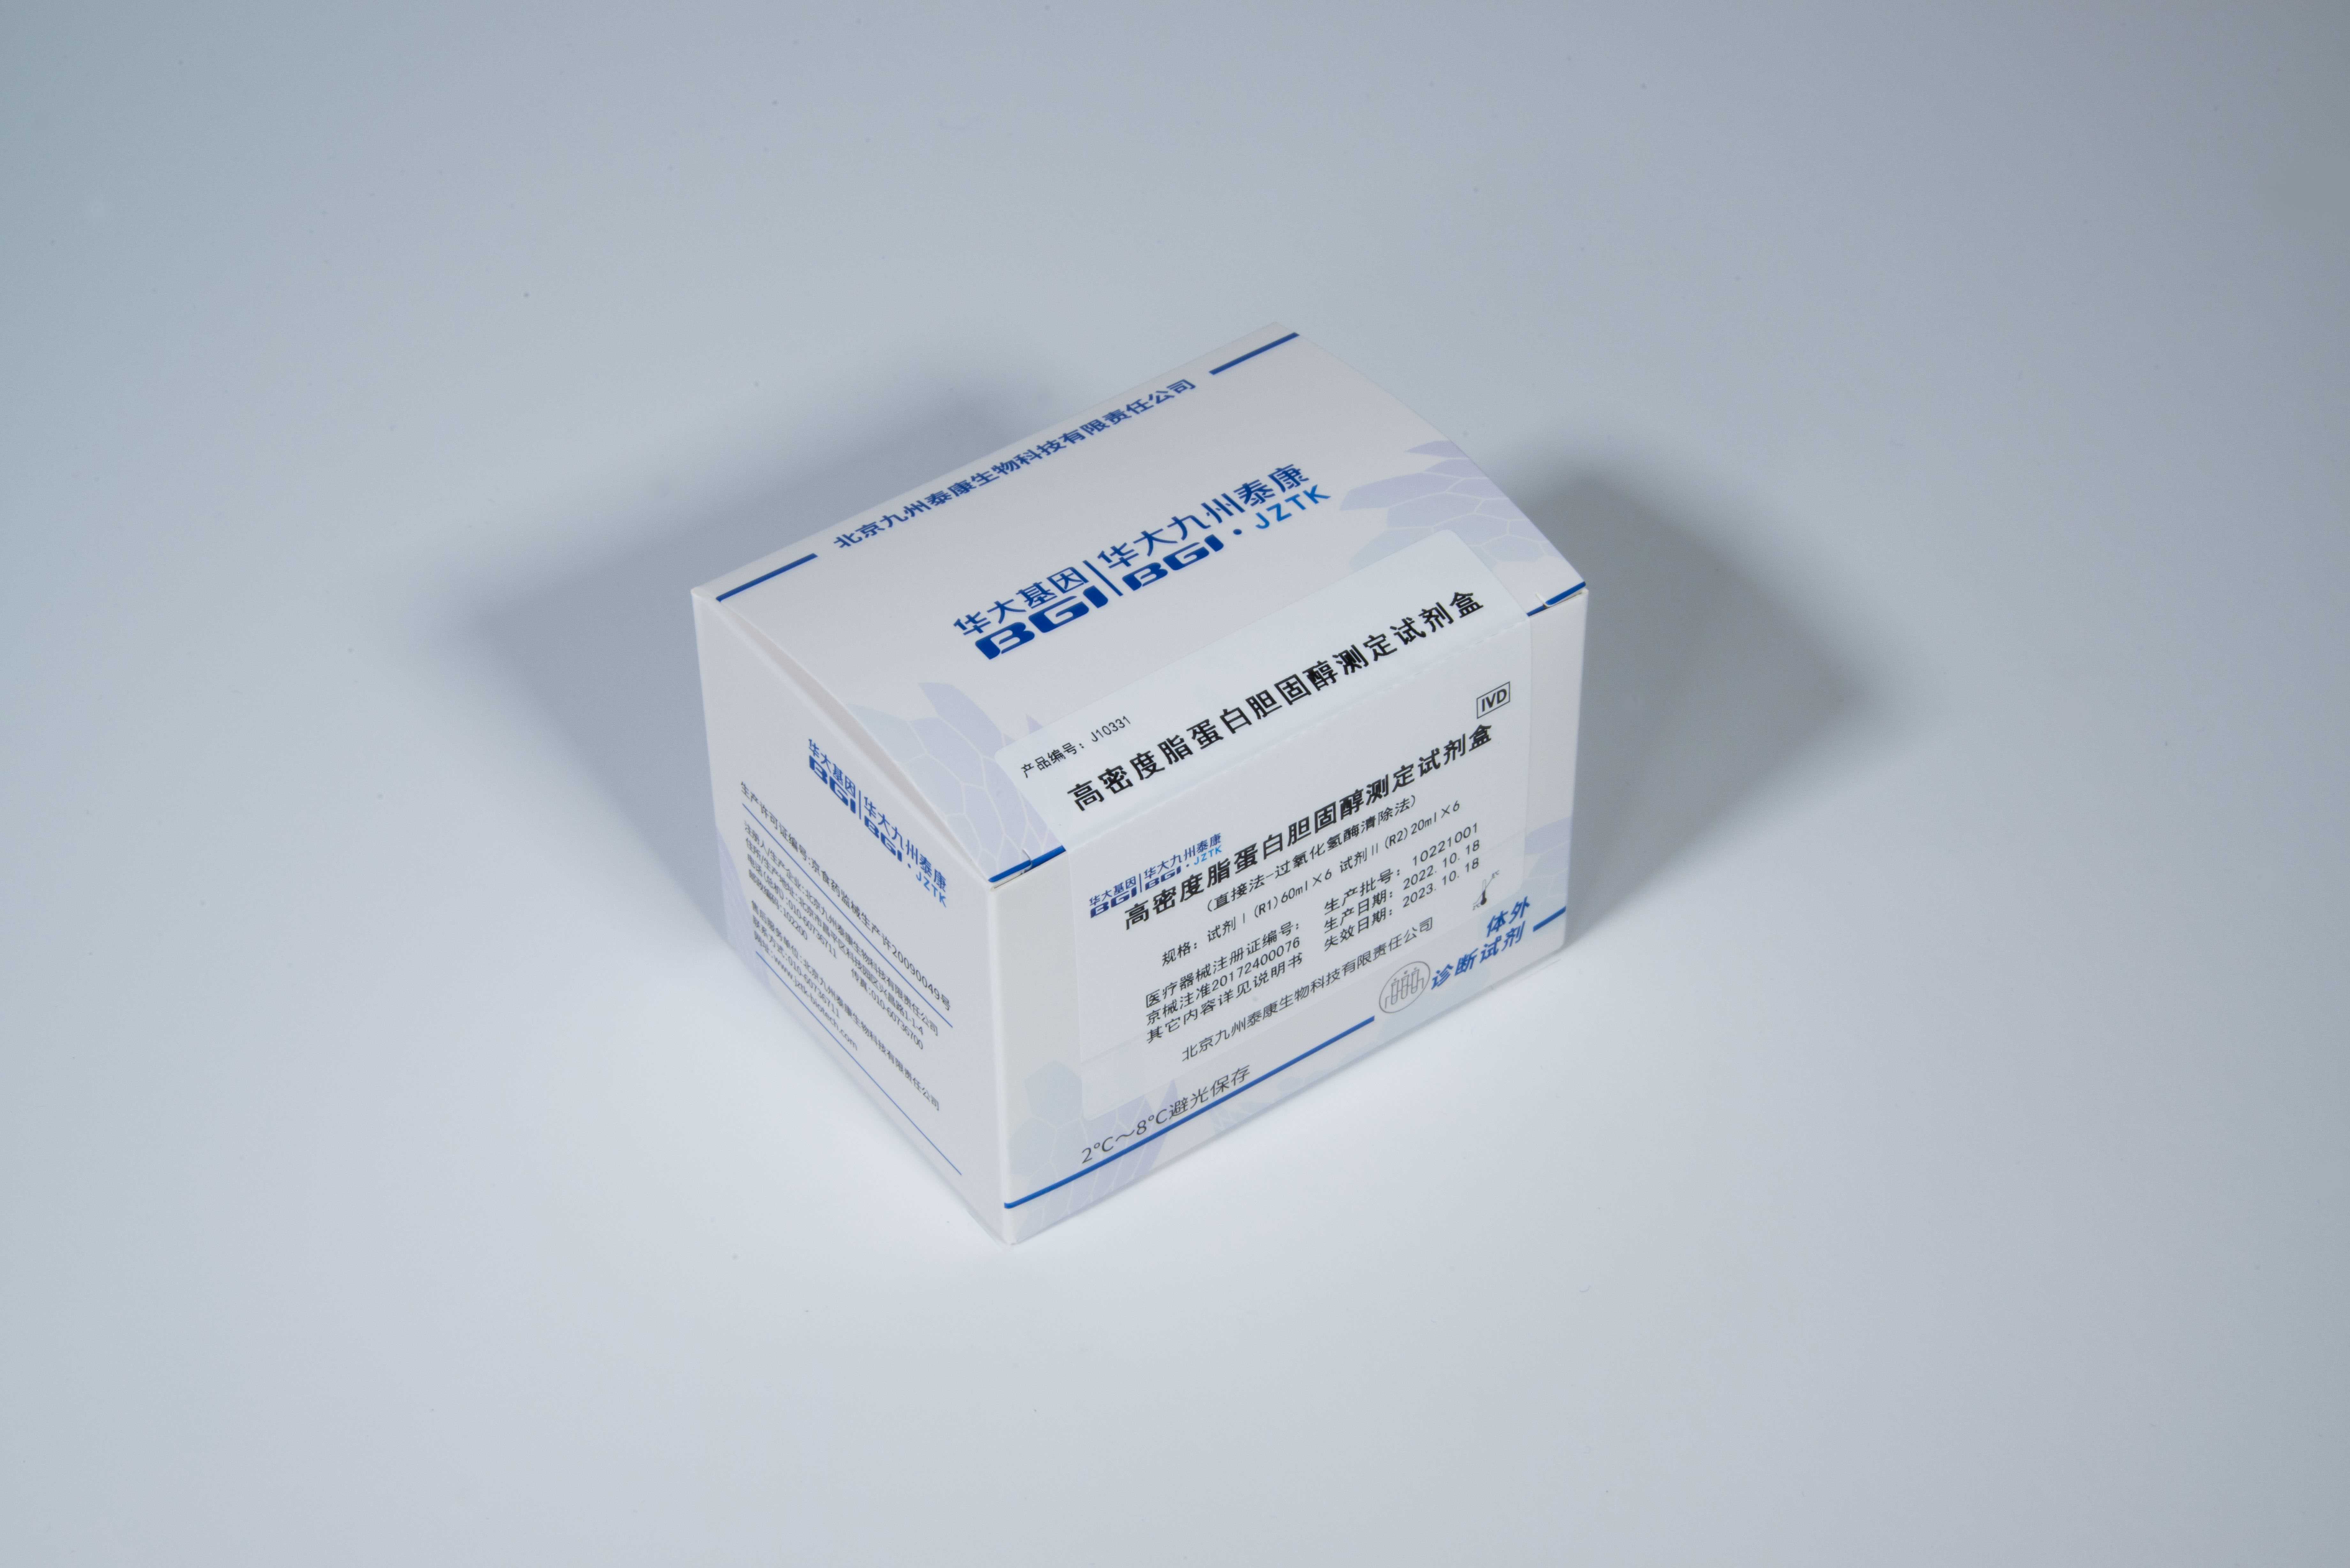 高密度脂蛋白胆固醇测定试剂盒-直接法-过氧化氢酶清除法